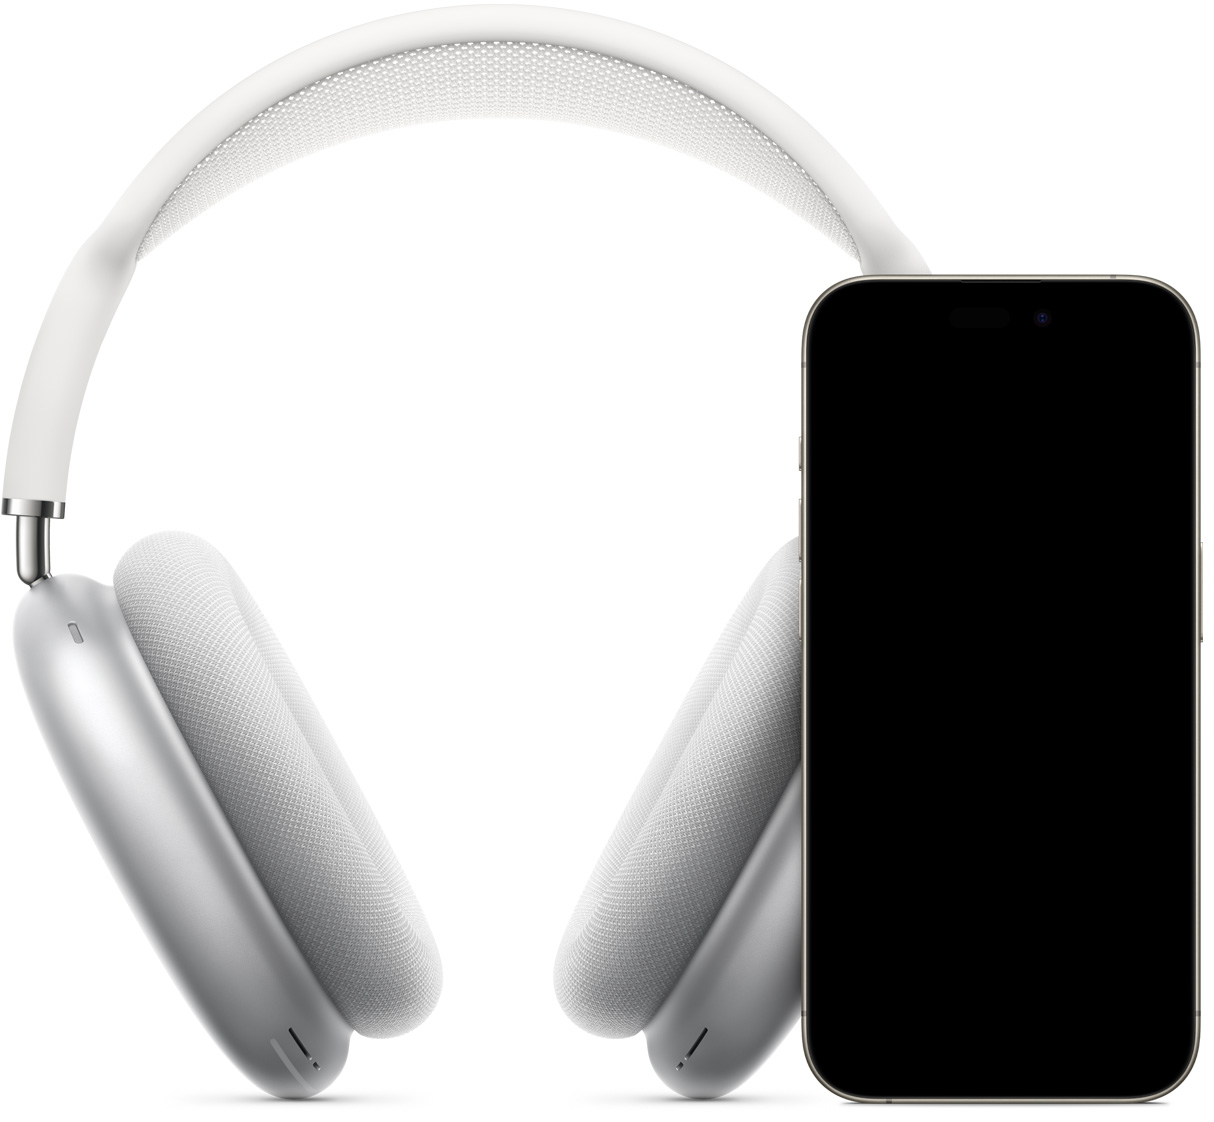 Hopeanväriset AirPods Max ‑kuulokkeet iPhonen takana, kuva korostaa nopeaa käyttöönottoa, kuvassa näkyy yhdistämispainike, jota napautettaessa AirPods Max ‑kuulokkeista muodostetaan laitepari.